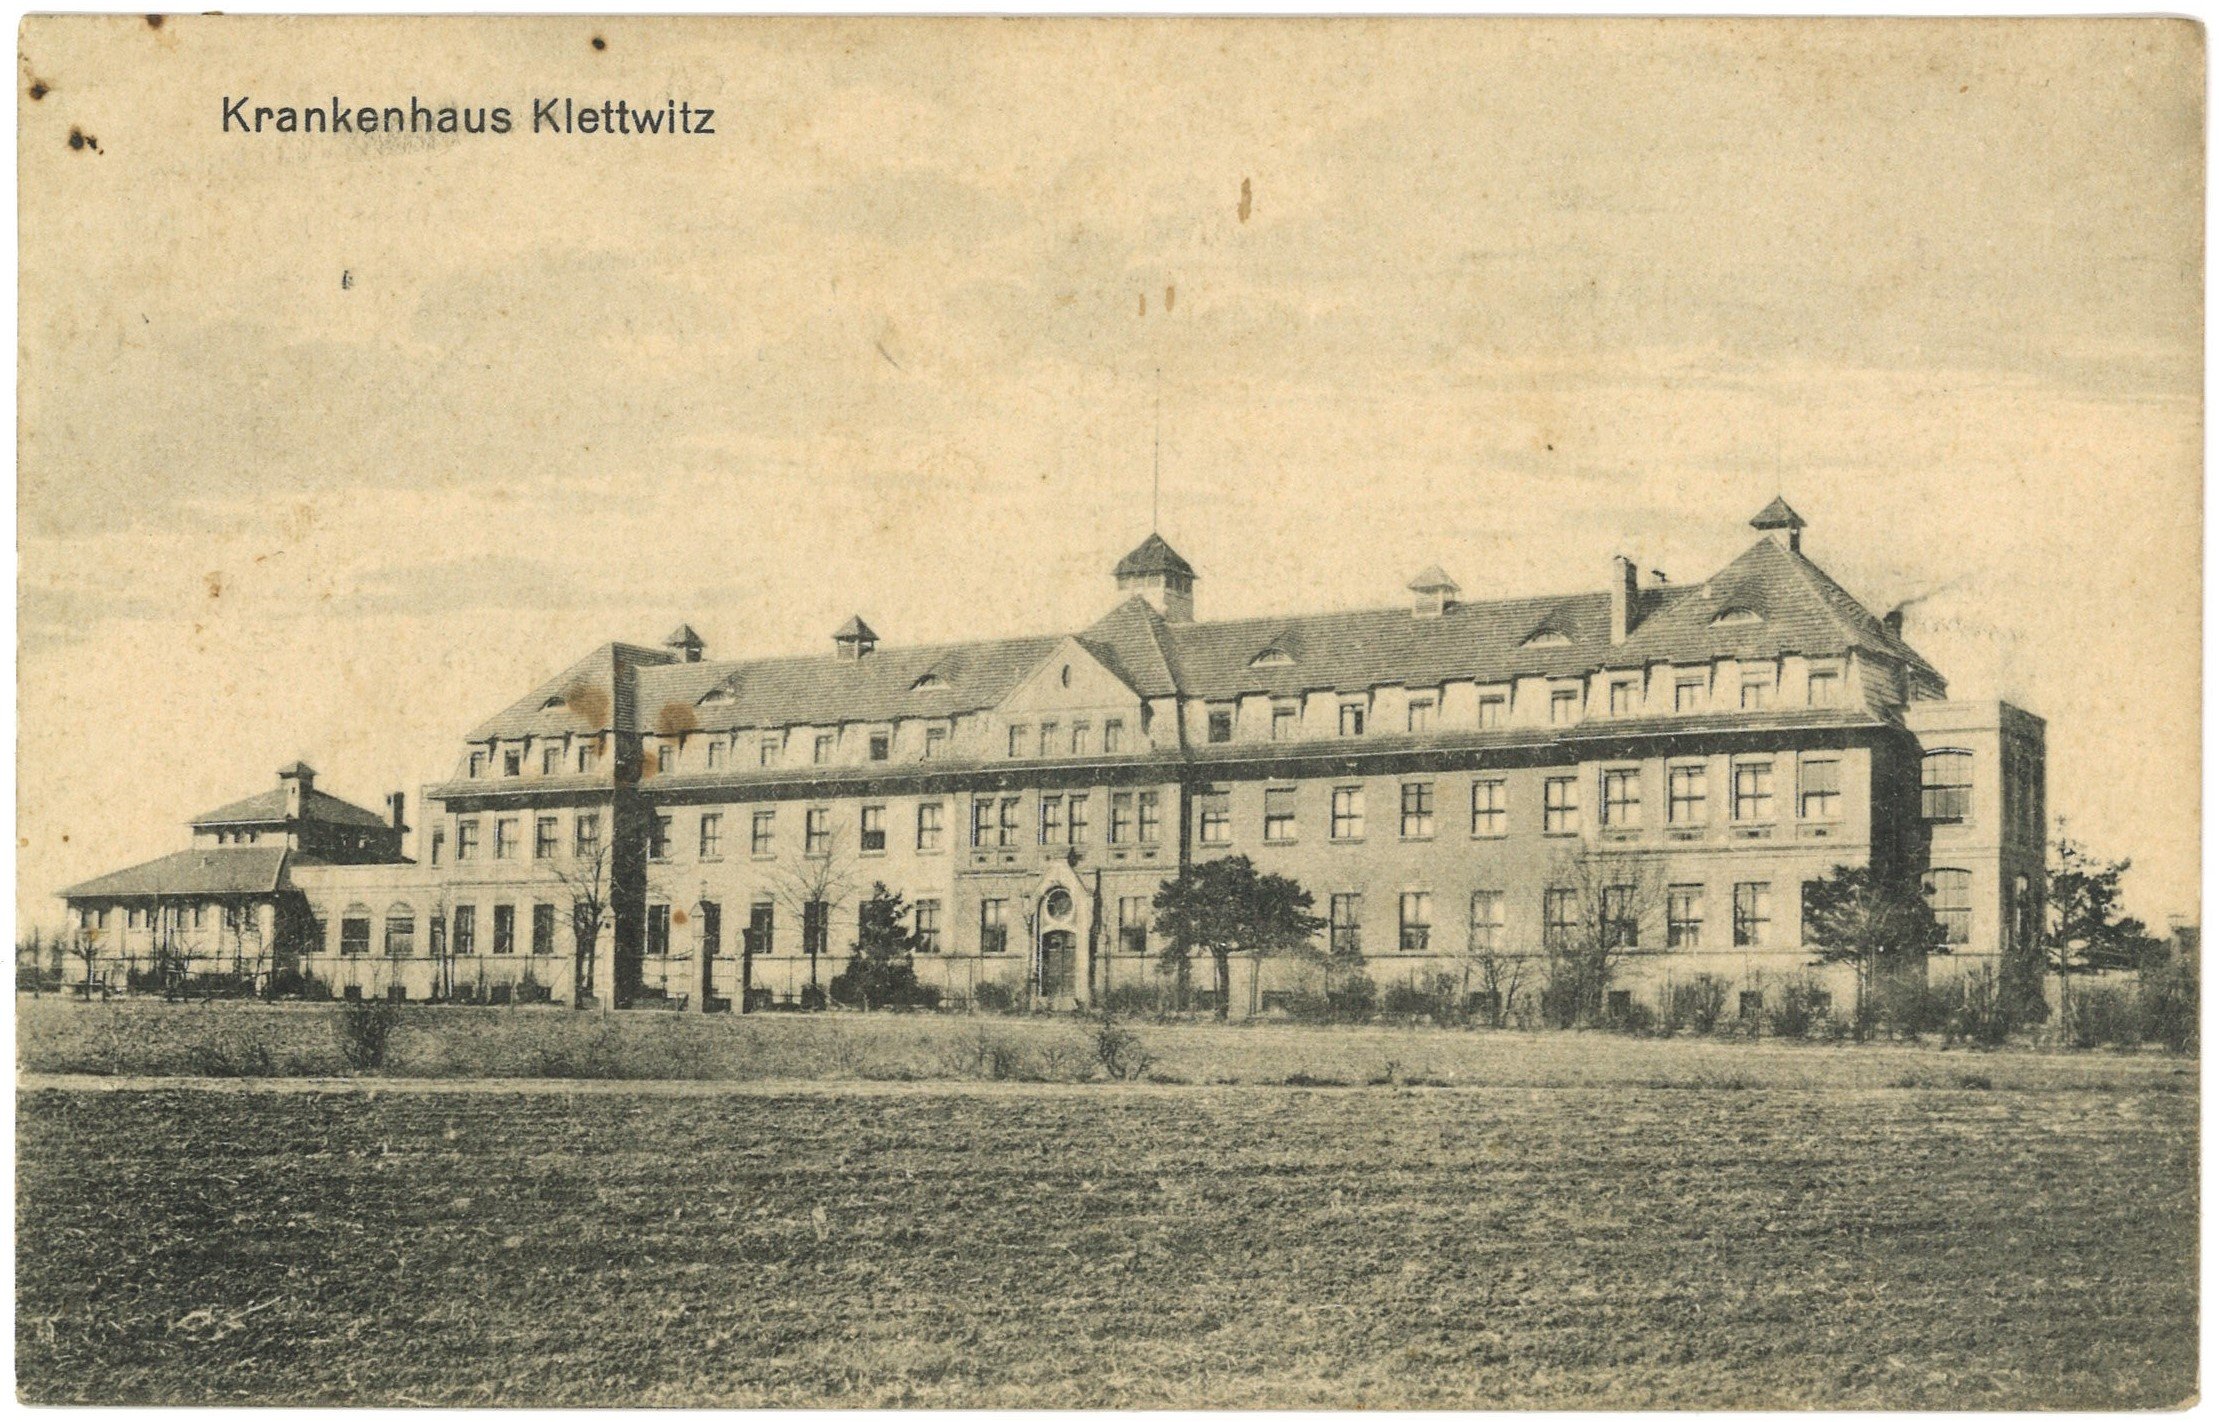 Klettwitz: Krankenhaus (Landesgeschichtliche Vereinigung für die Mark Brandenburg e.V. CC BY)